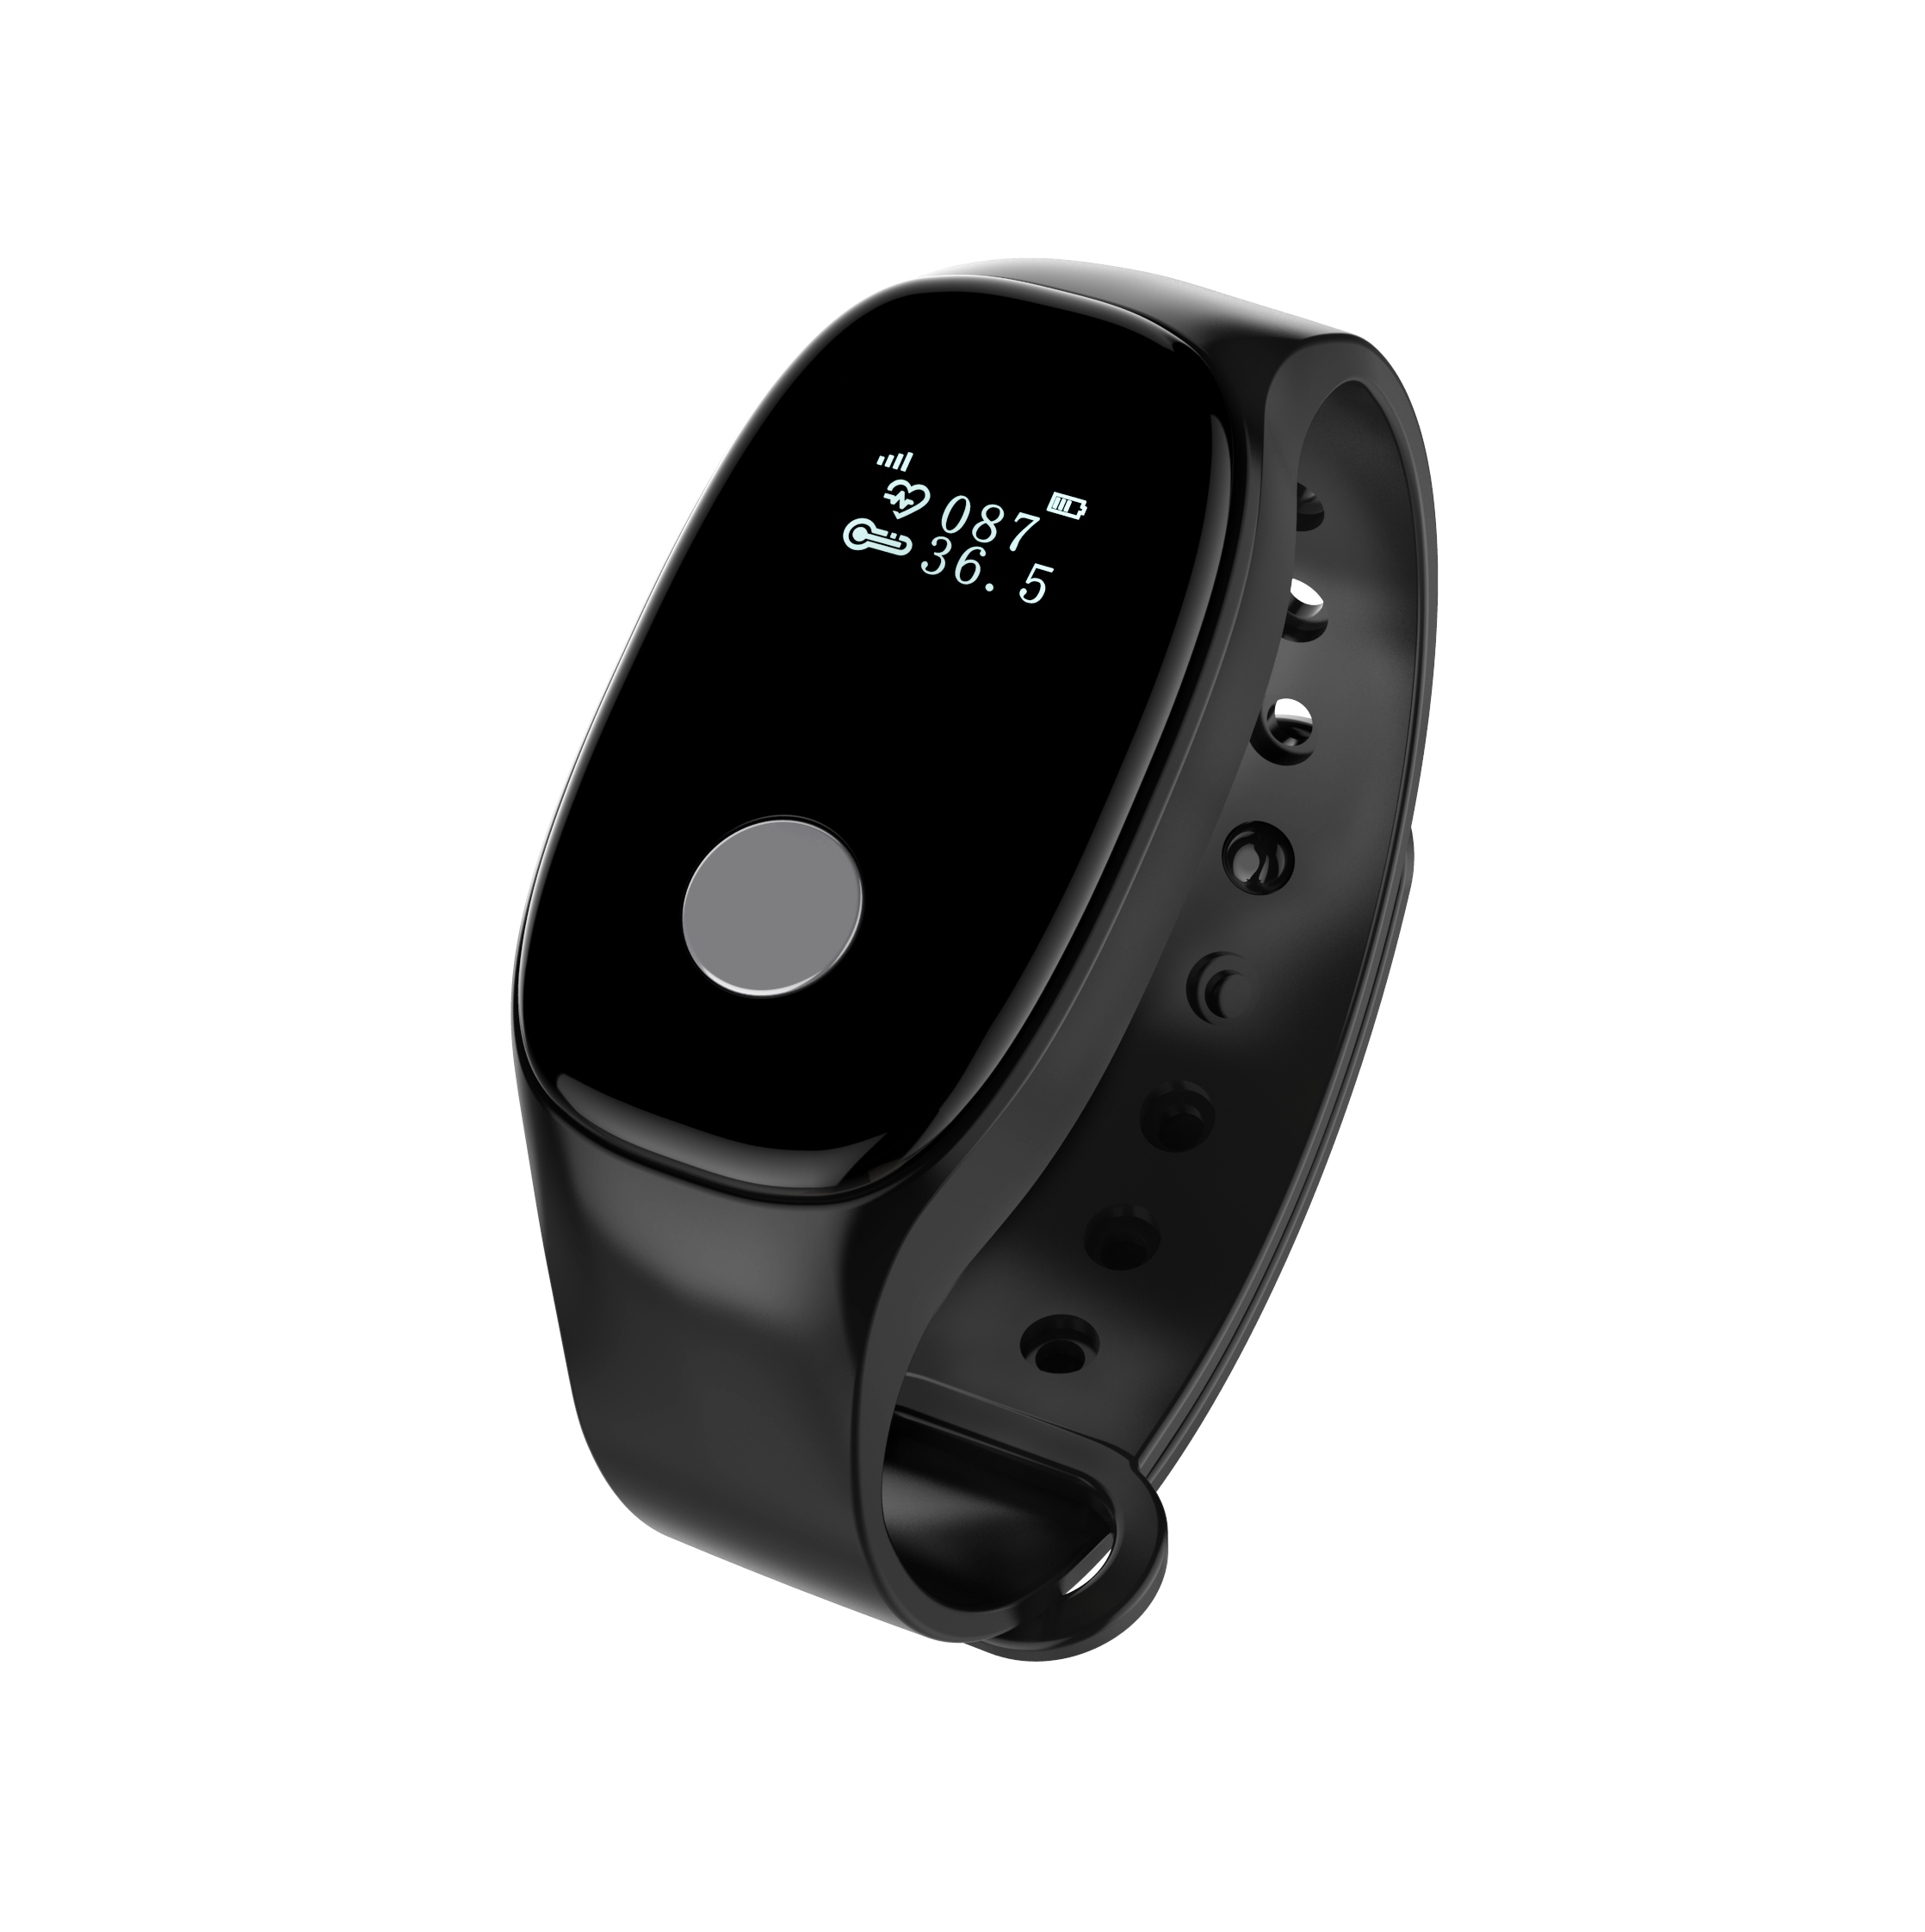 NB定位测温智能蓝牙RFID计步手环腕带生命体征监测